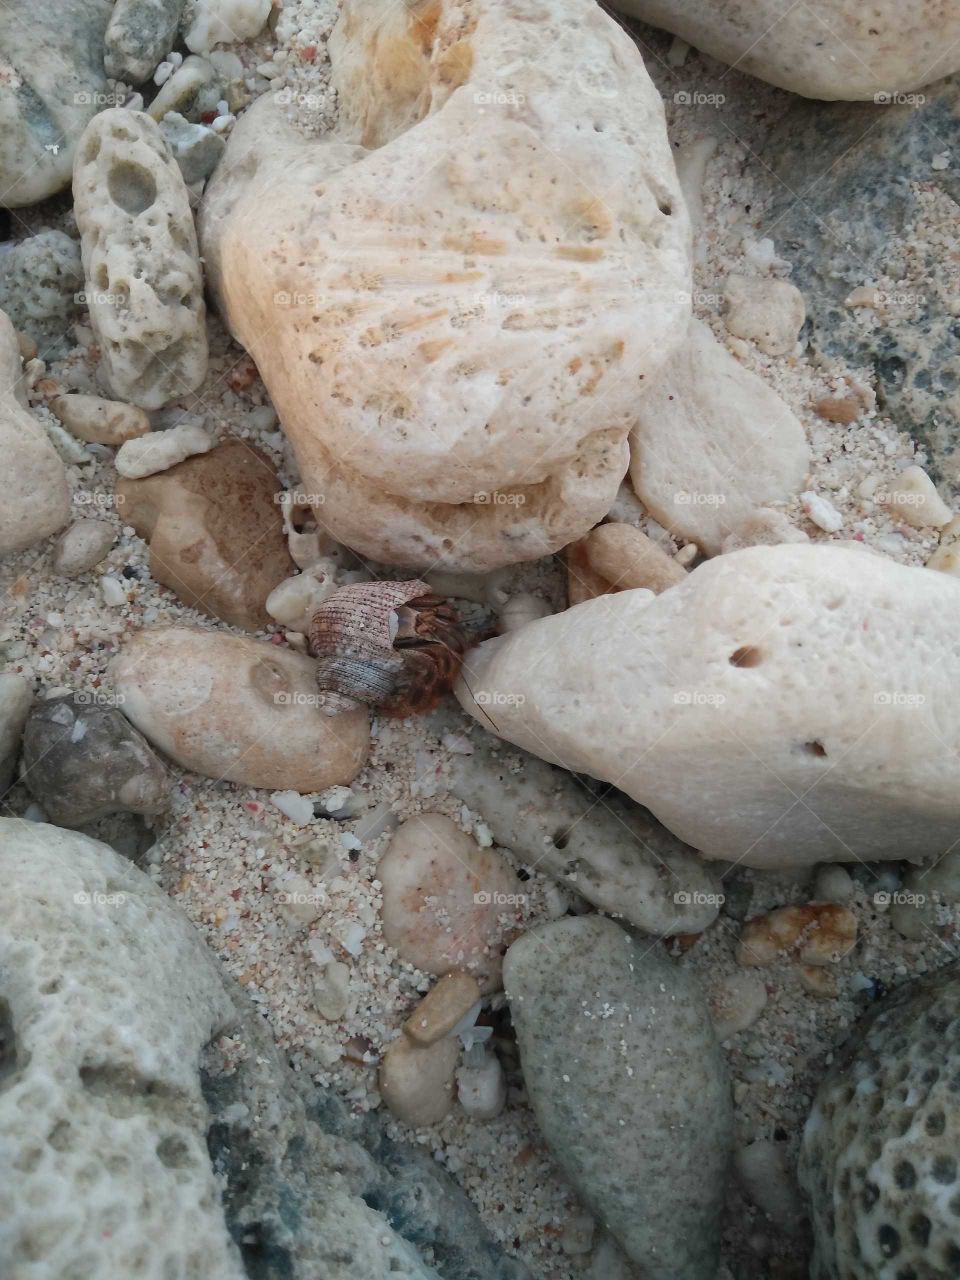 Small crab among rocks